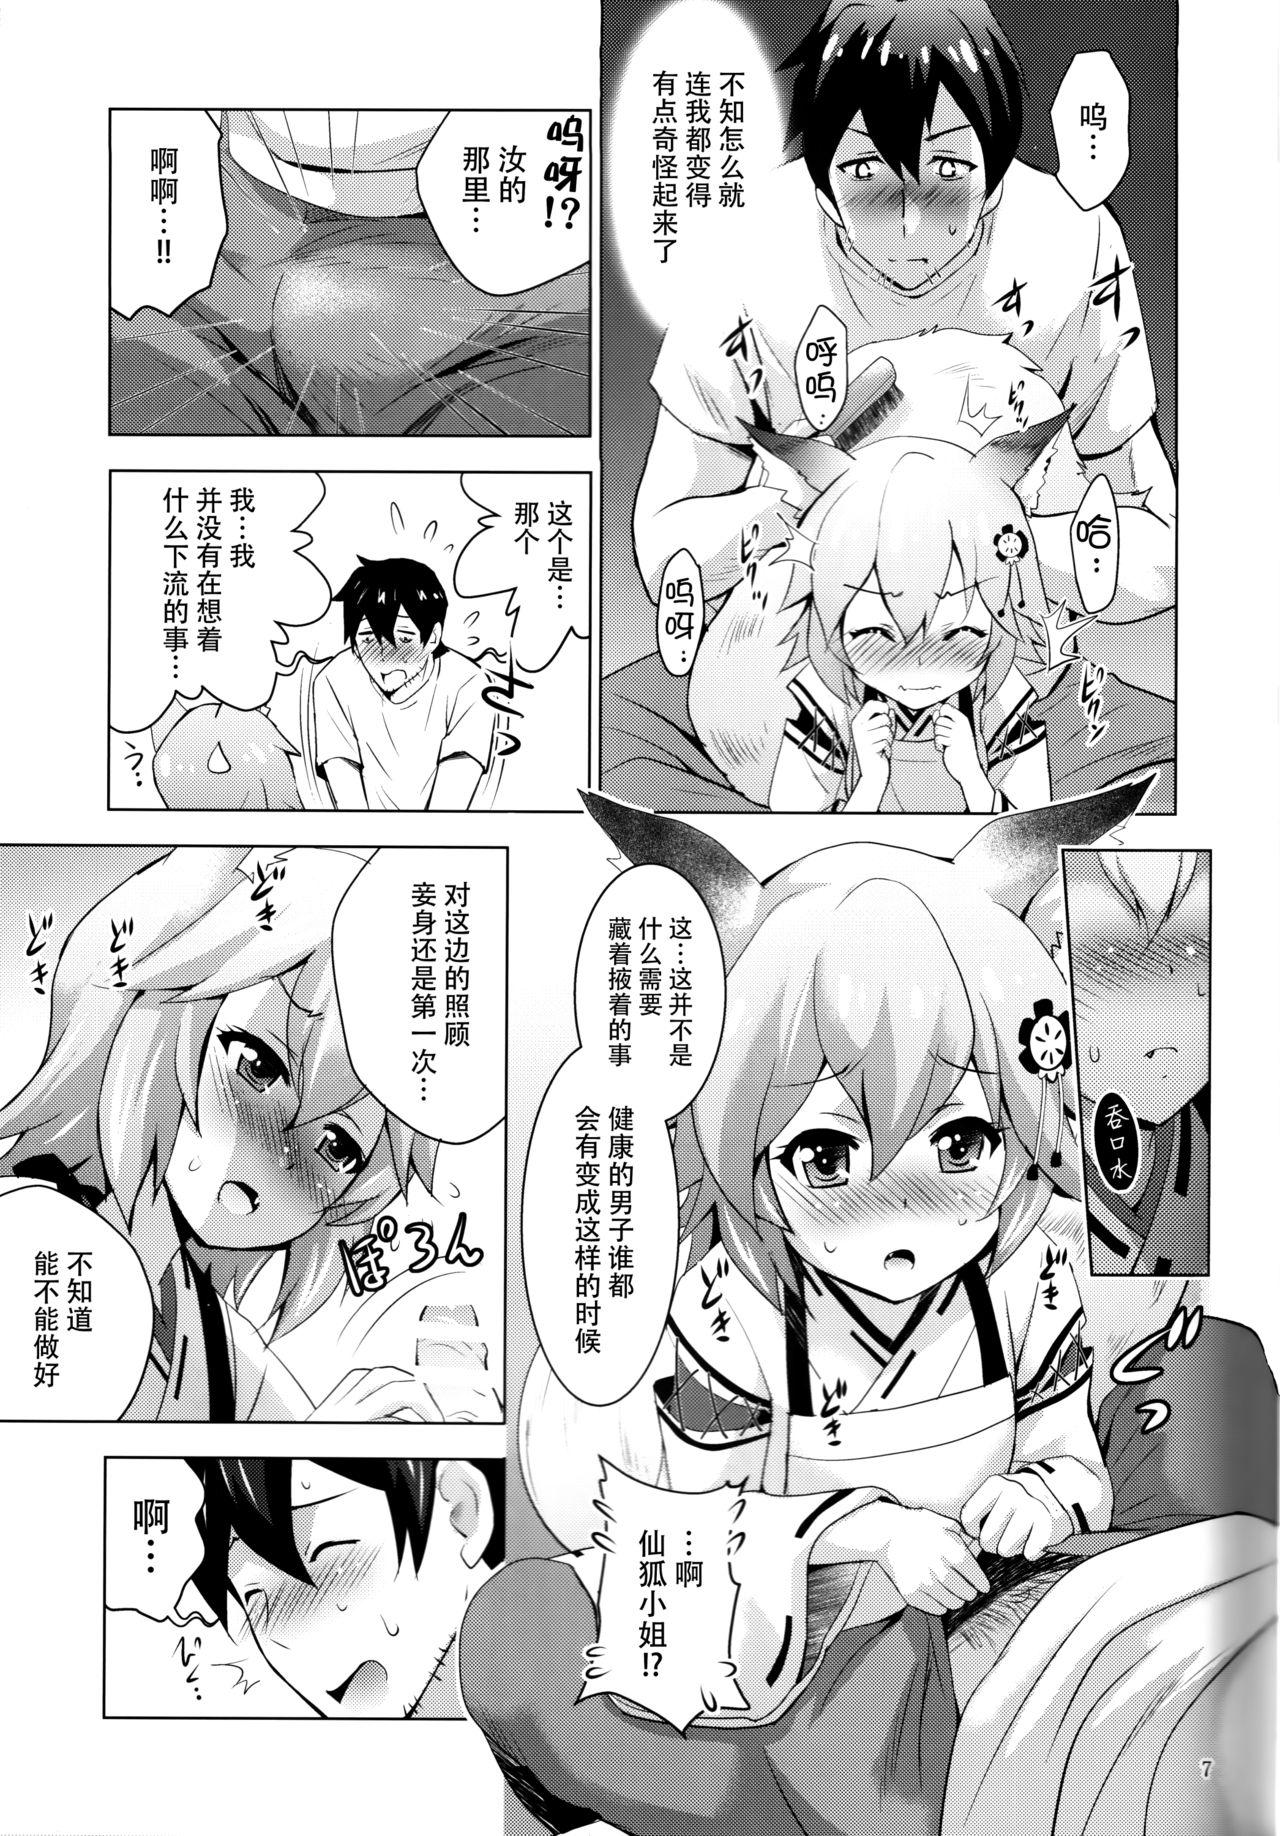 Orgasm MOUSOU Mini Theater 43 - Sewayaki kitsune no senko-san Parody - Page 7